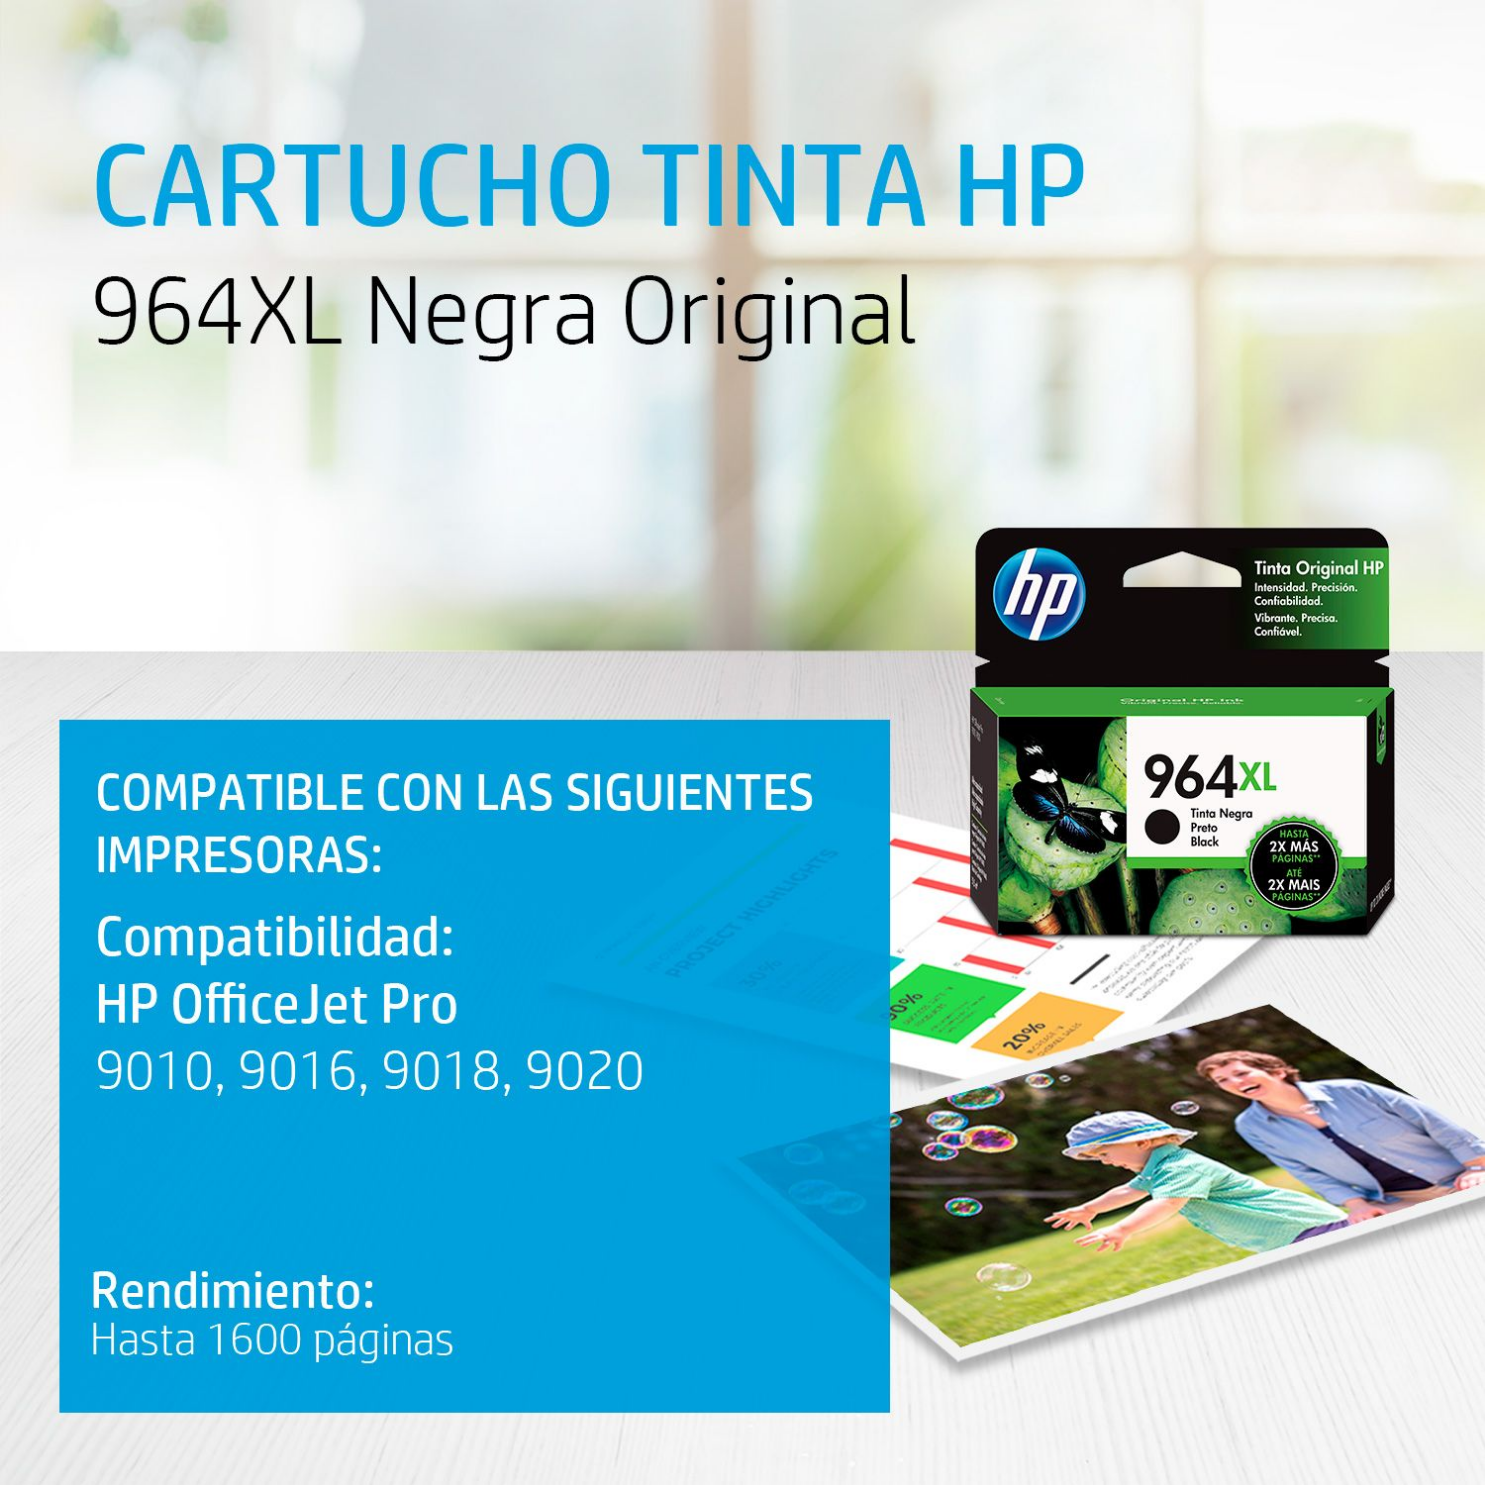 Cartucho de tinta HP 964XL Negro (3JA57AL) OfficeJet 9010, 9020, 1600 Pag.